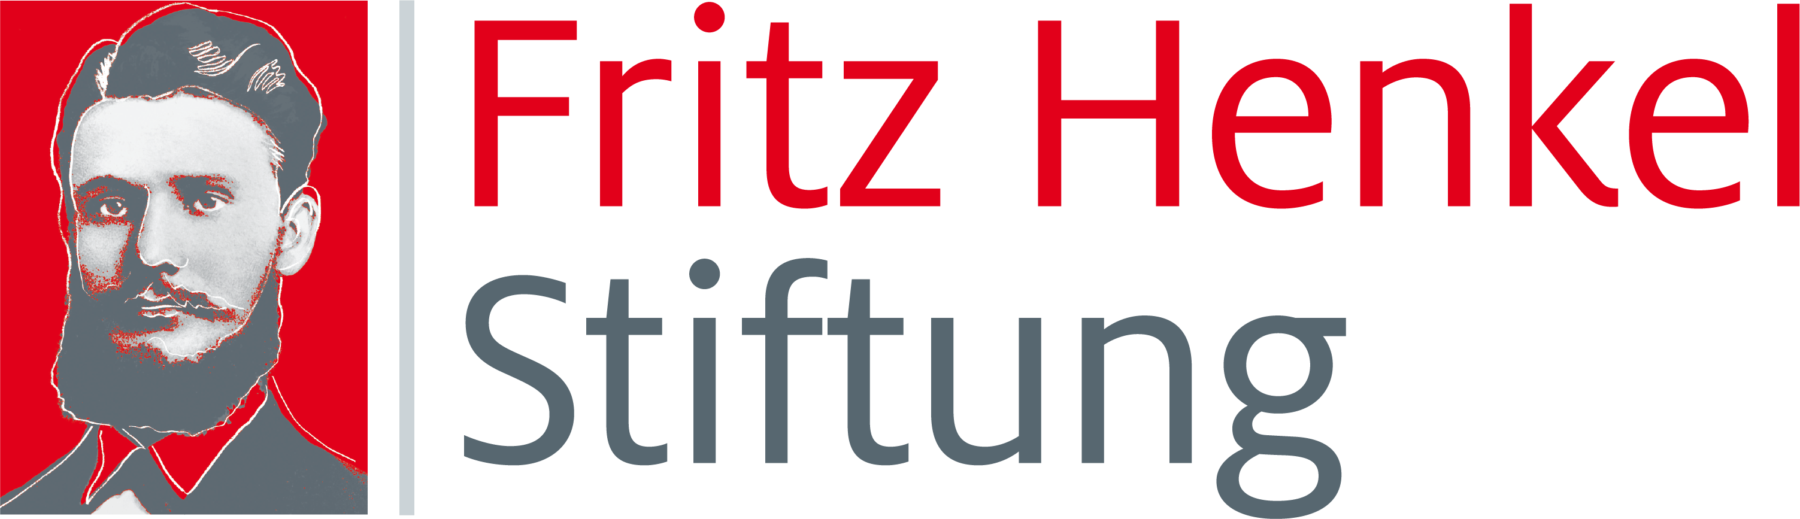 Fritz Henkel Stiftung, , Fritz Henkel Stiftung feiert 10-jähriges Bestehen